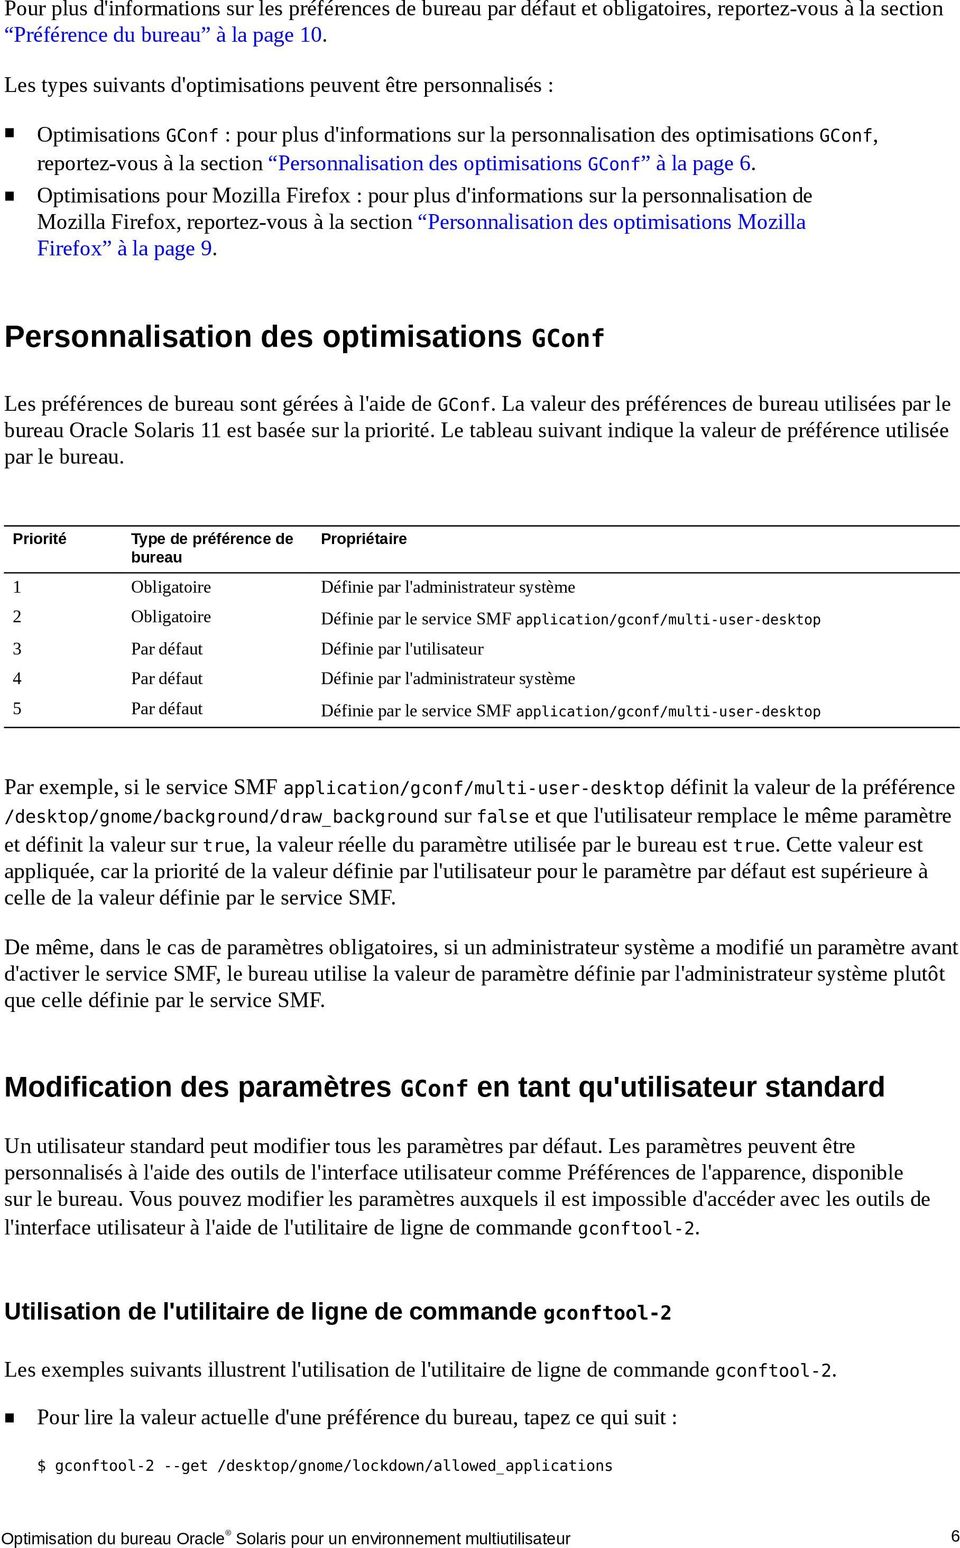 Personnalisation des optimisations GConf à la page 6.